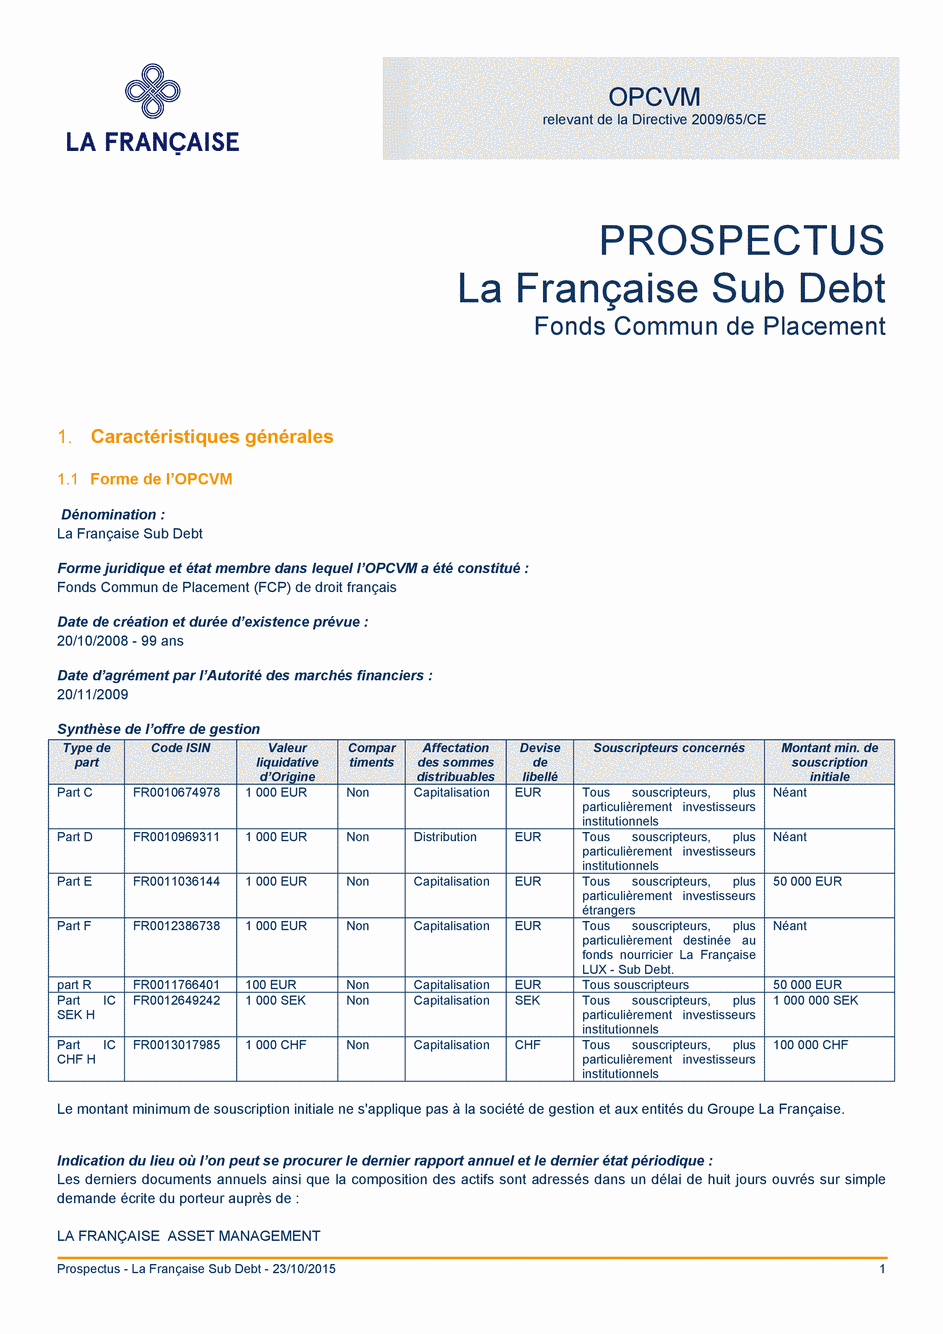 Prospectus La Française Sub Debt - Part IC SEK H - 23/10/2015 - Français